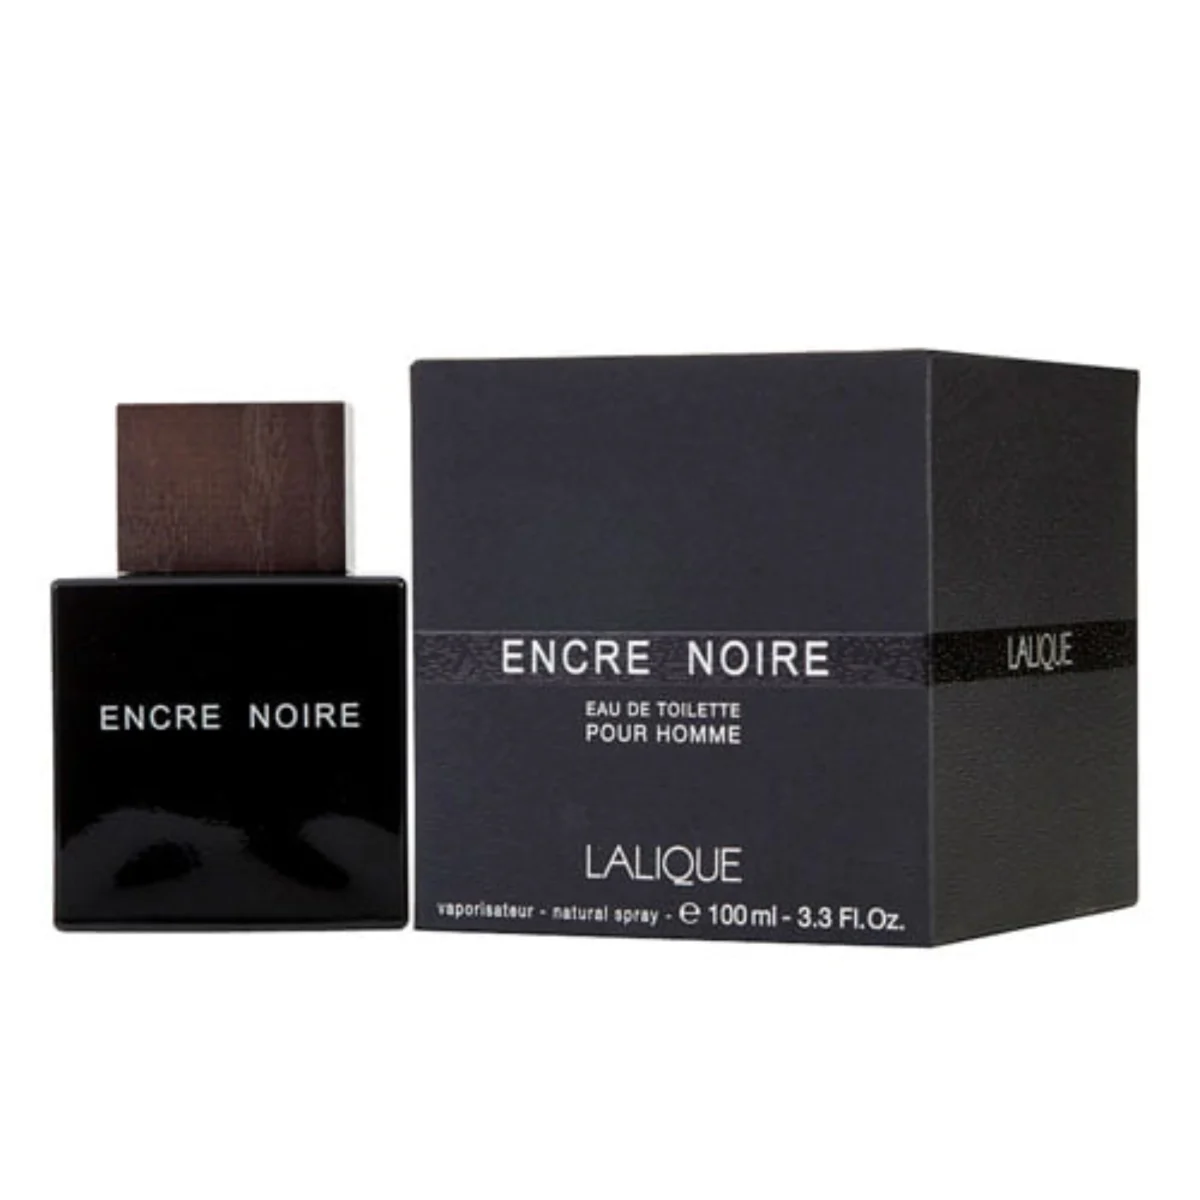 ادکلن لالیک مشکی چوبی انکر نویر مردانه | Lalique Encre Noire